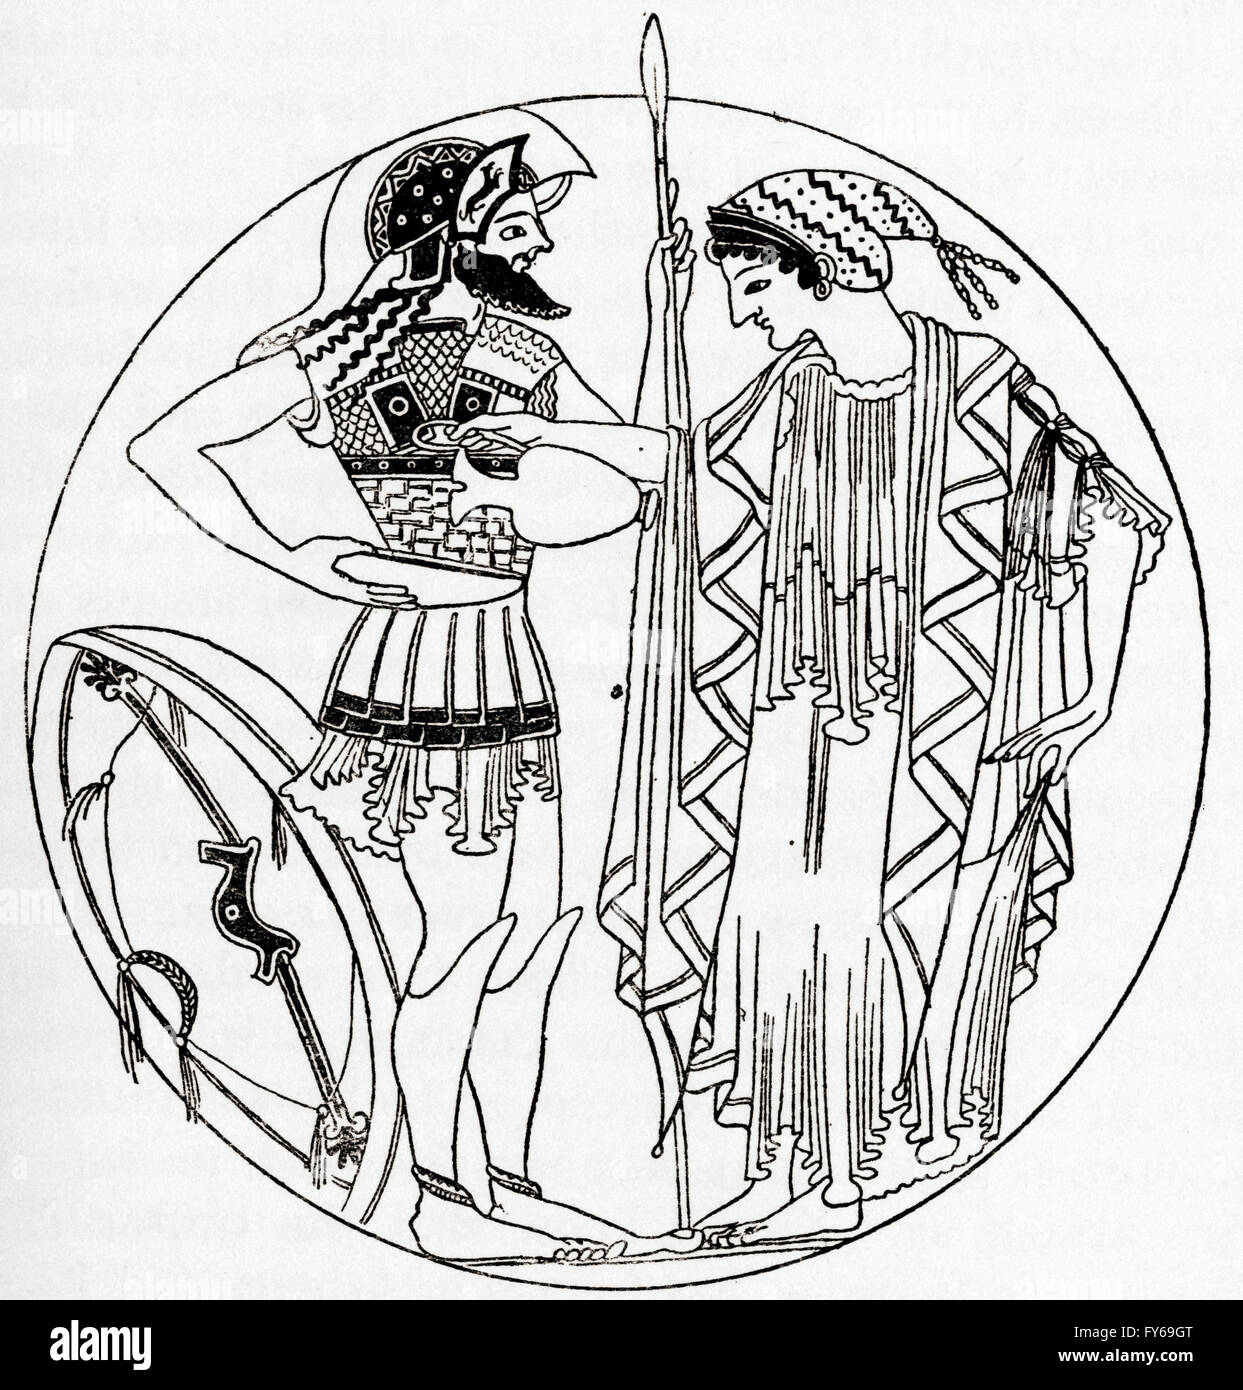 Griechin gießen ein Trankopfer aus einer antiken Vase zeichnen. Ein Trankopfer ist eine rituelle ausgießen einer Flüssigkeit als Opfergabe an einen Gott oder Geist oder in Erinnerung an diejenigen, die gestorben sind. Stockfoto